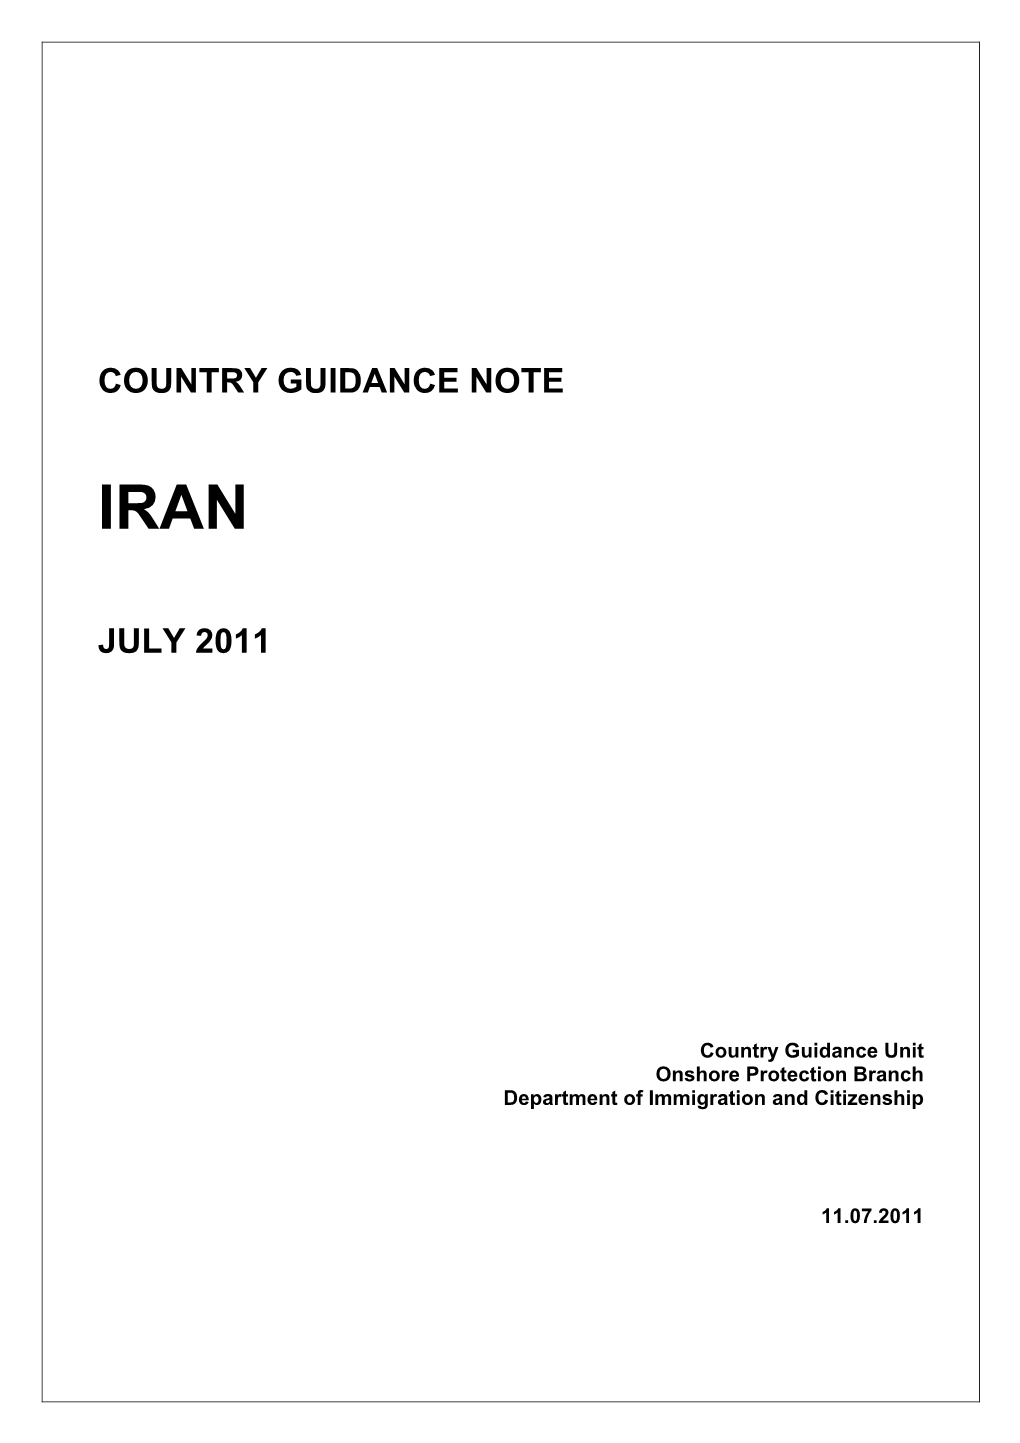 Iran July 2011